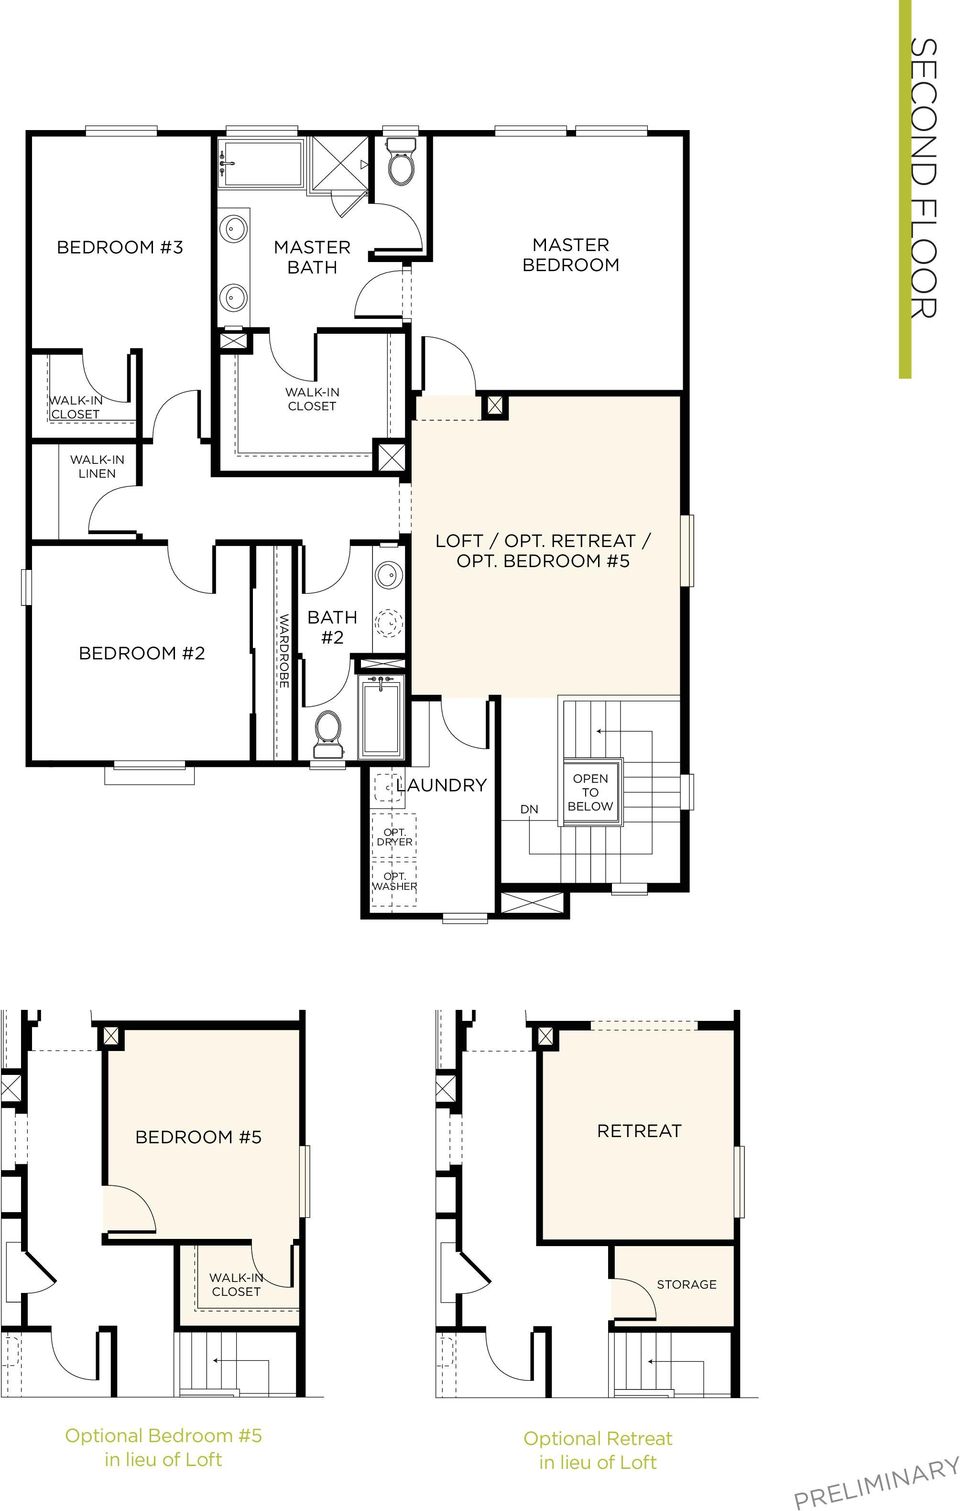 WASHER PLAN 3BR - 2ND FLOOR BEDROOM #5 RETREAT CLOSET STORAGE Optional Bedroom #5 in lieu of Loft